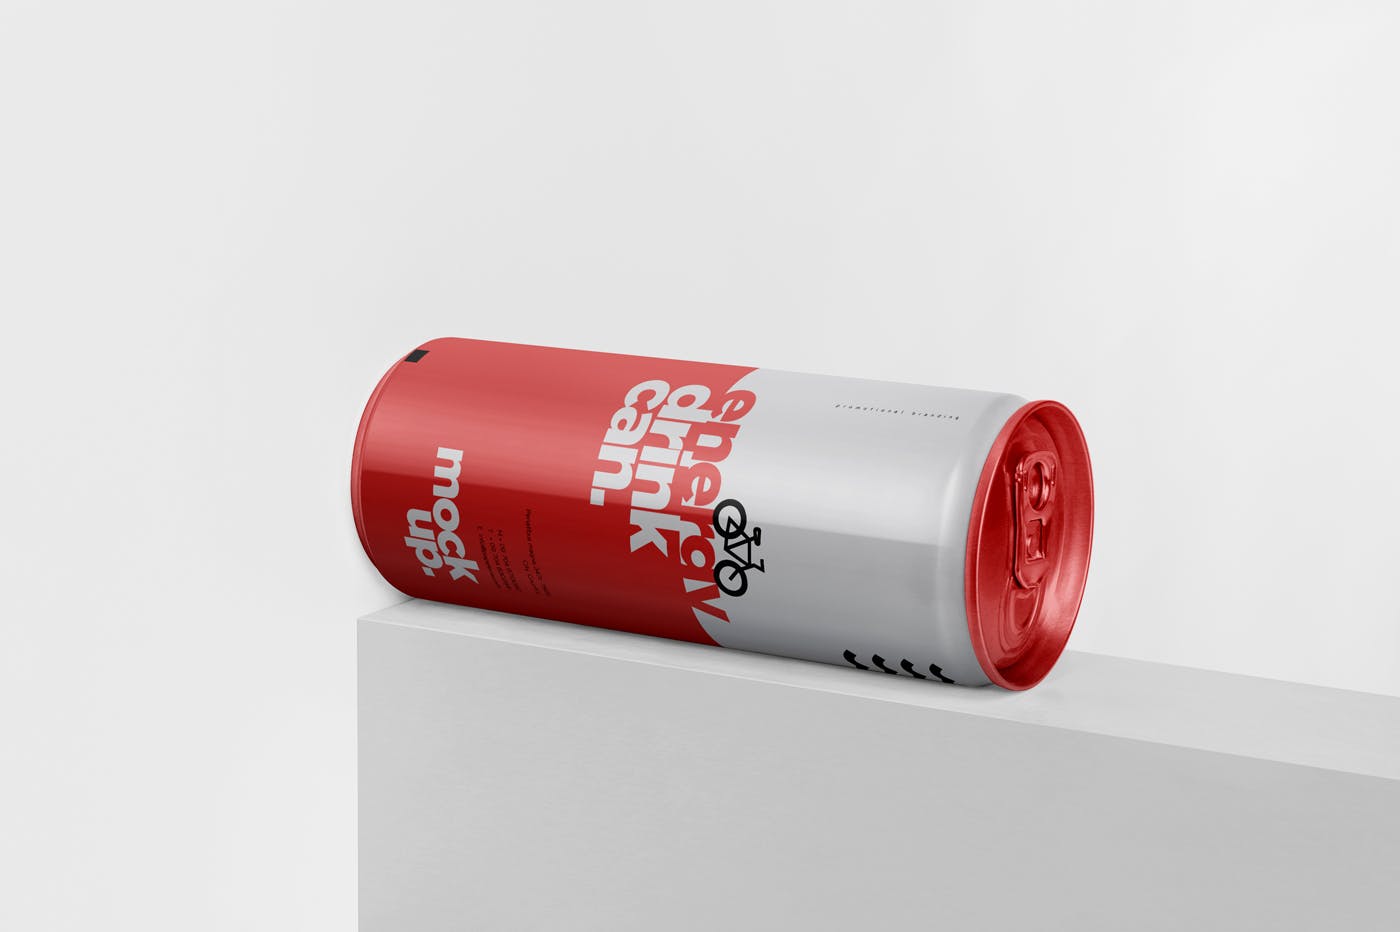 能量饮料易拉罐罐头外观设计素材中国精选模板 Energy Drink Can Mock-Up – 250 ml插图(2)